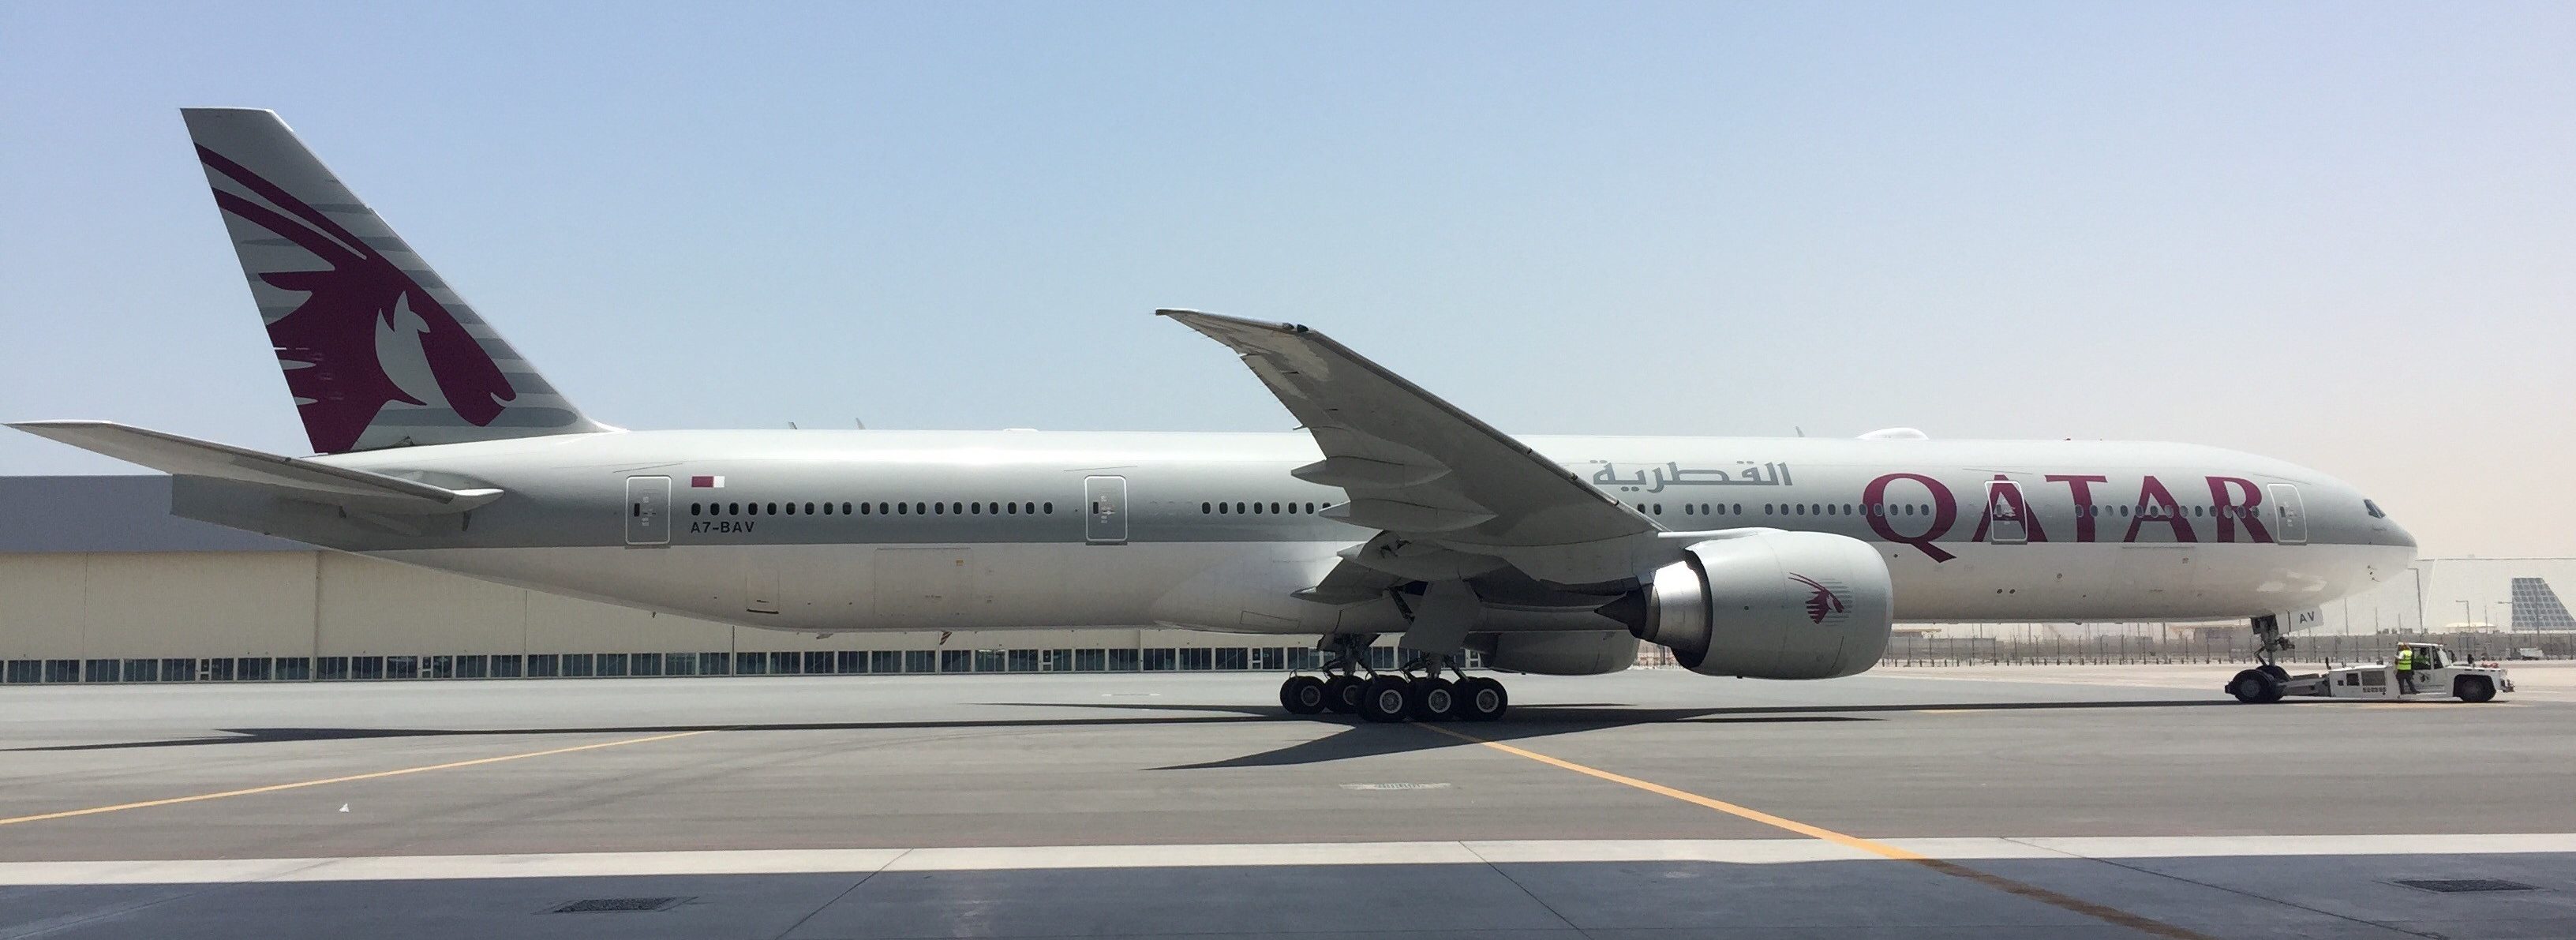 Qatar Airways toma tierra, por primera vez, en Canberra, Australia